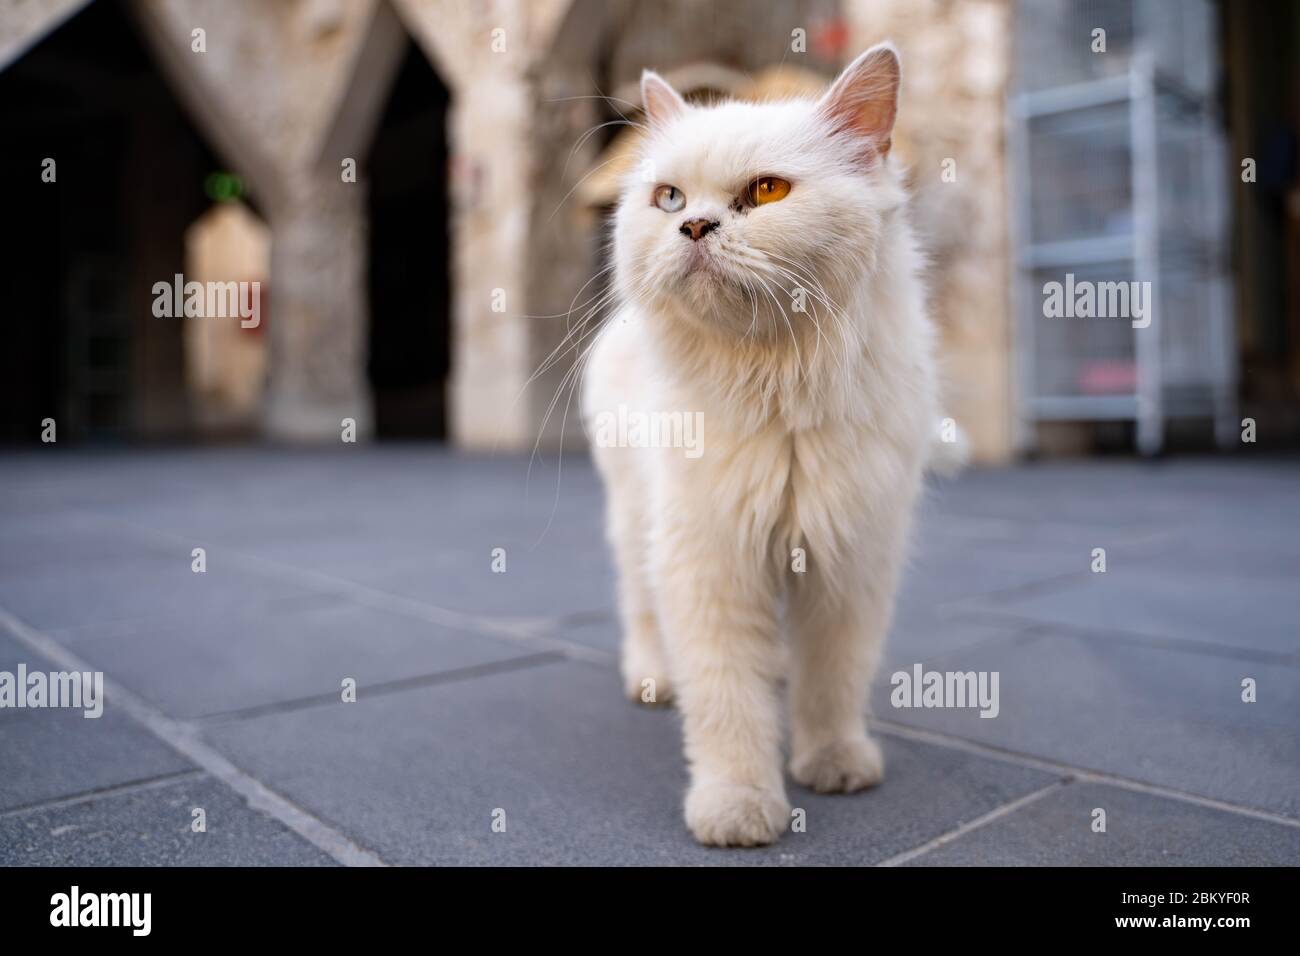 Cat with heterochromia iridis Stock Photo